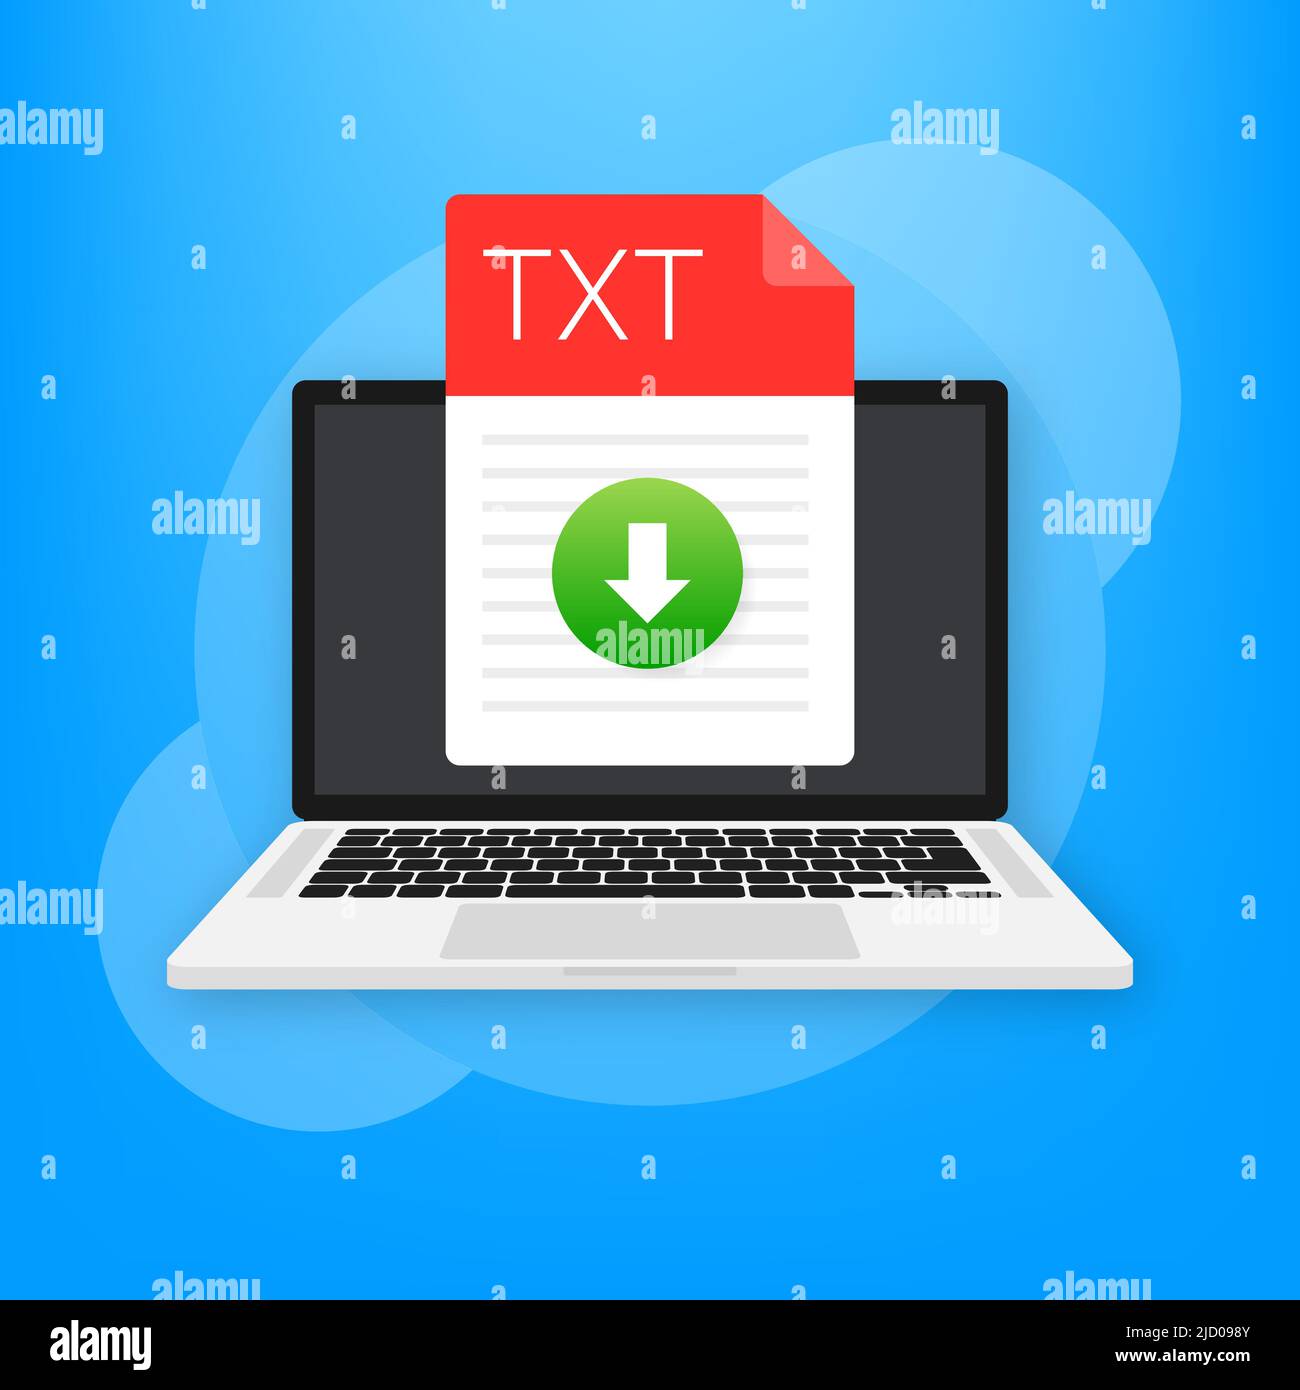 TXT-Dateisymbol. Dokumenttyp der Tabelle. Modernes flaches Design grafische Illustration. Vector TXT-Symbol. Stock Vektor